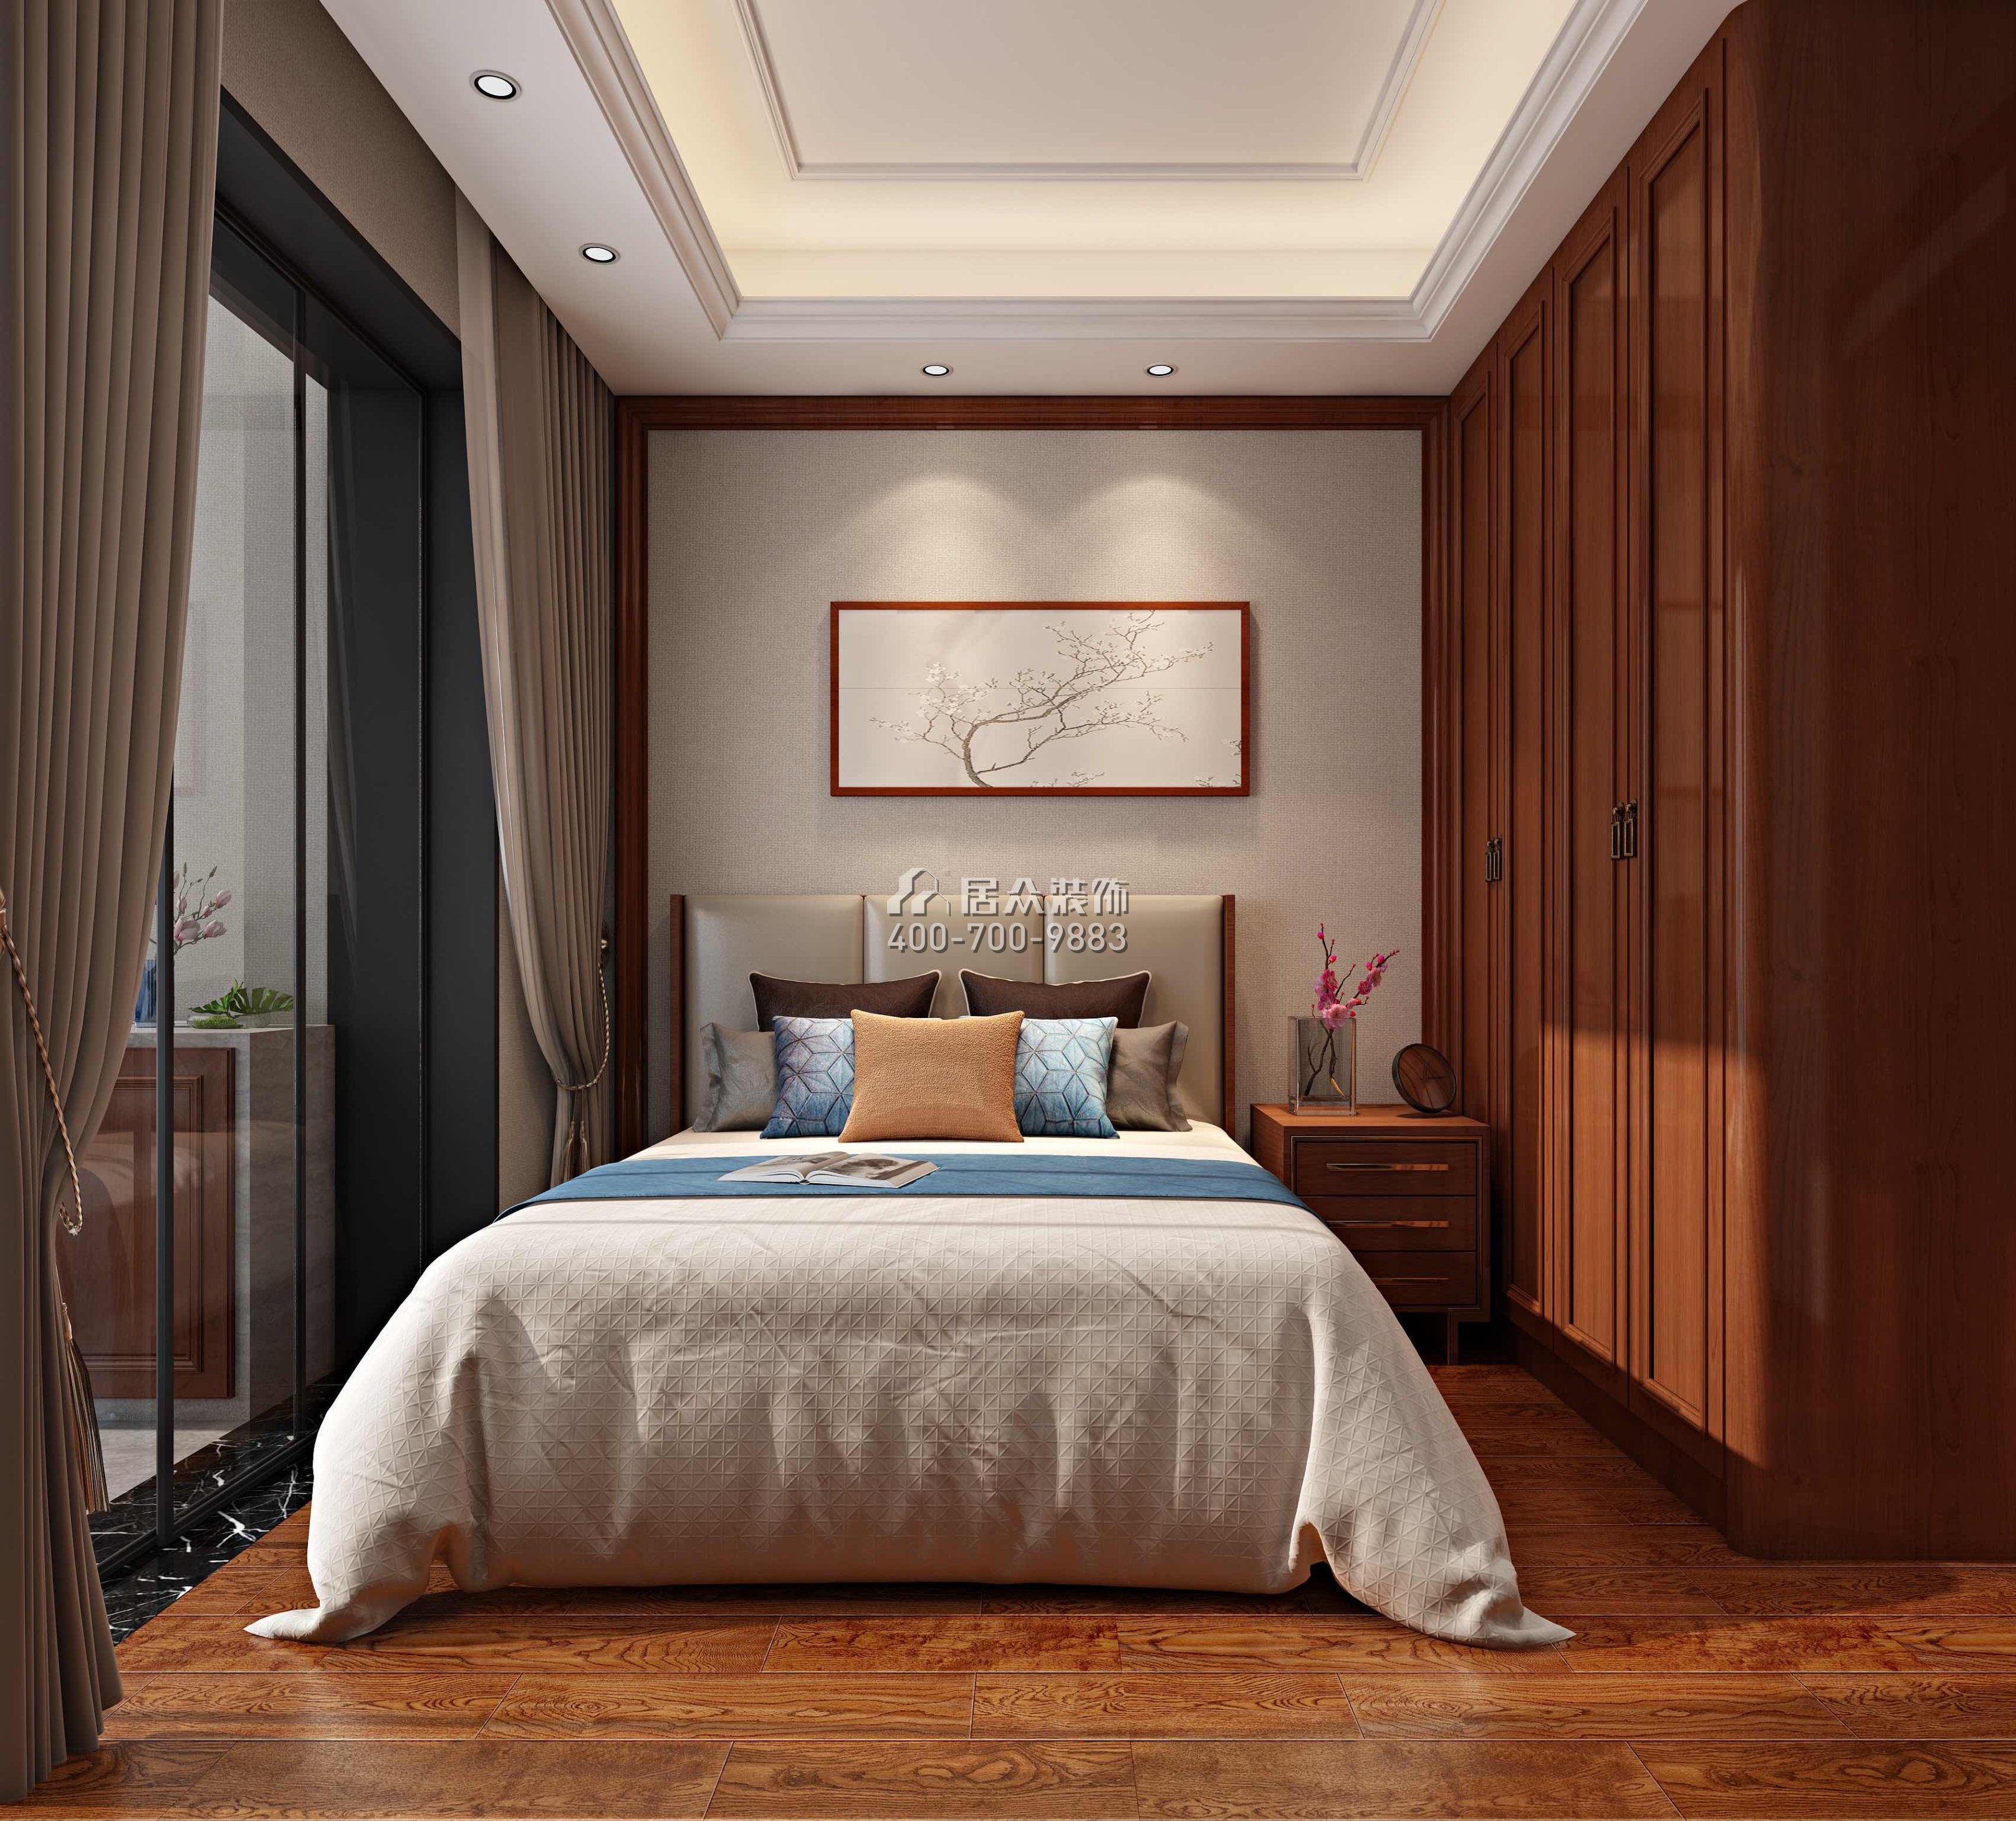 天鹅湖花园三期122平方米中式风格平层户型卧室装修效果图